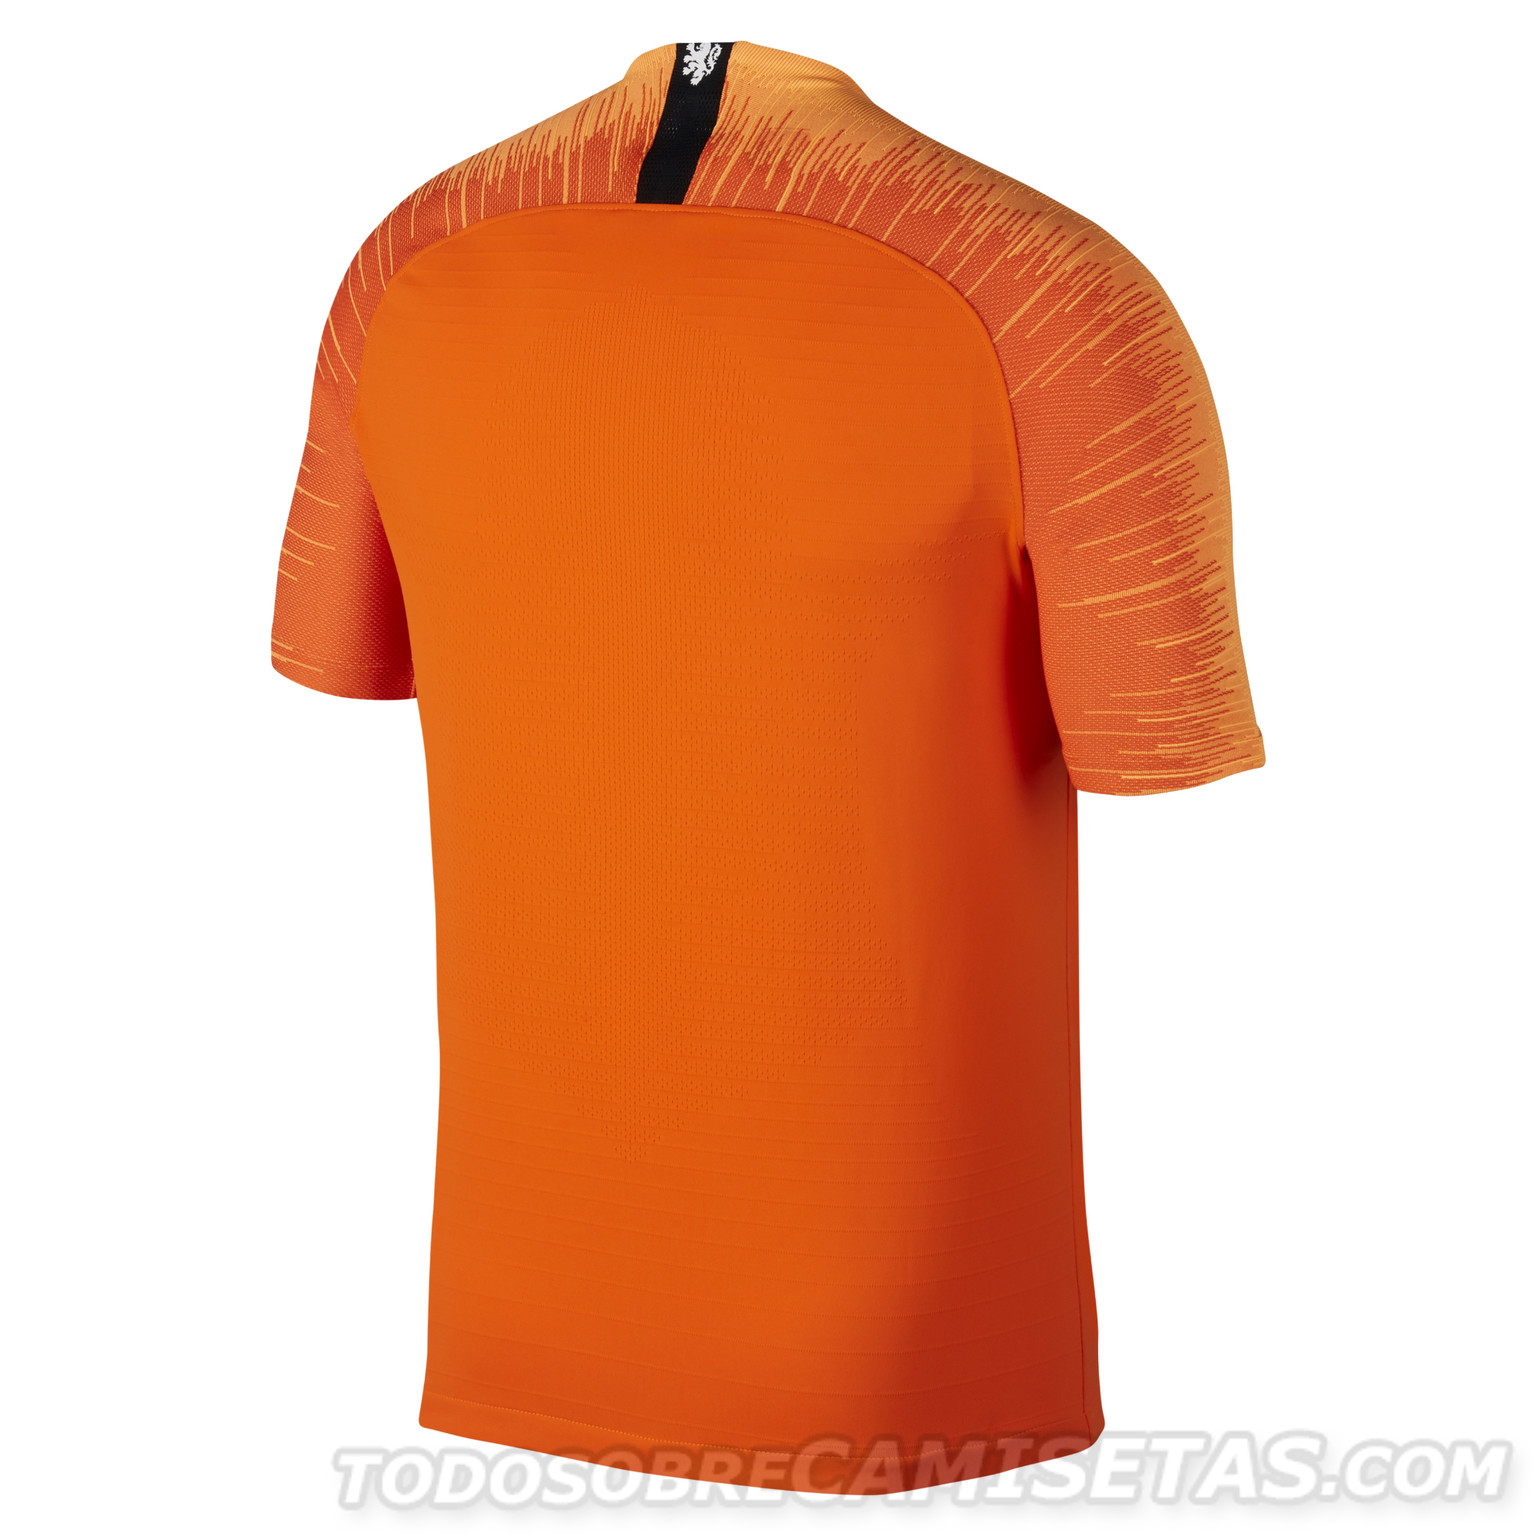 Netherlands Nike 2018 Kits